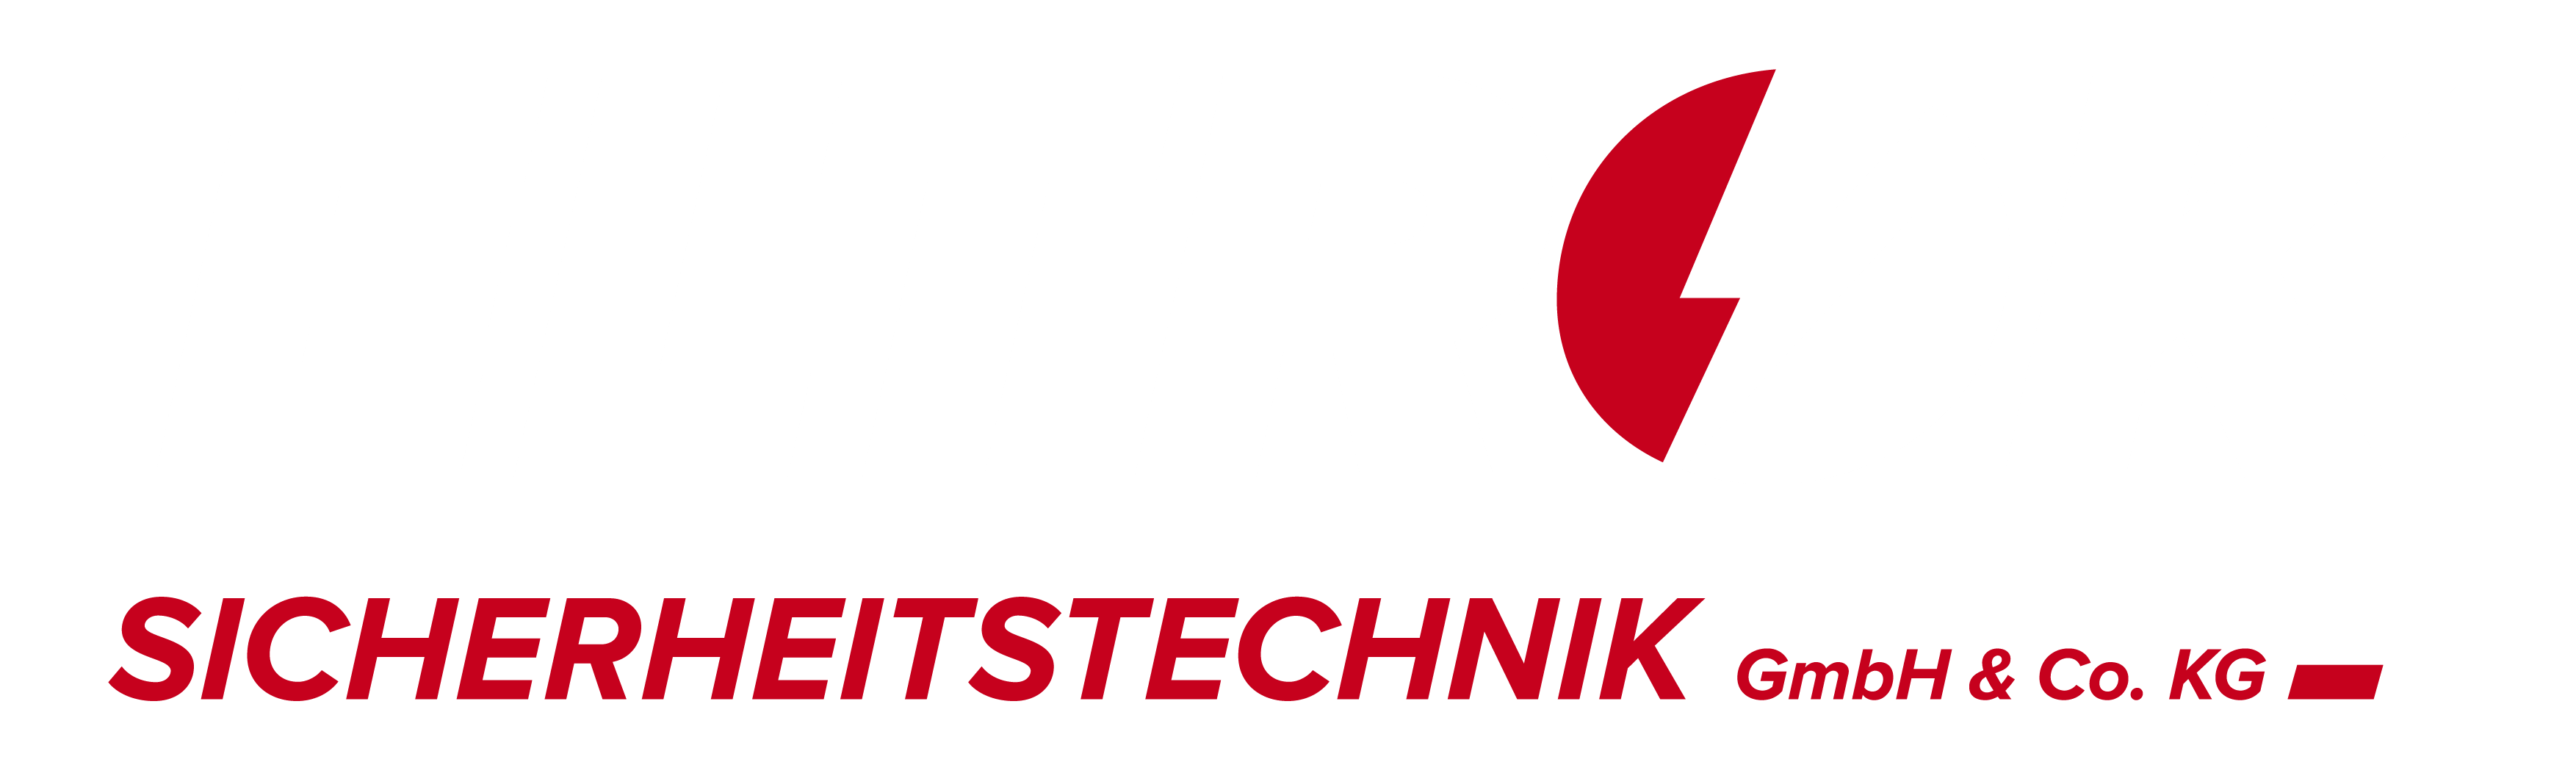 Logo ELTROK Sicherheitstechnik